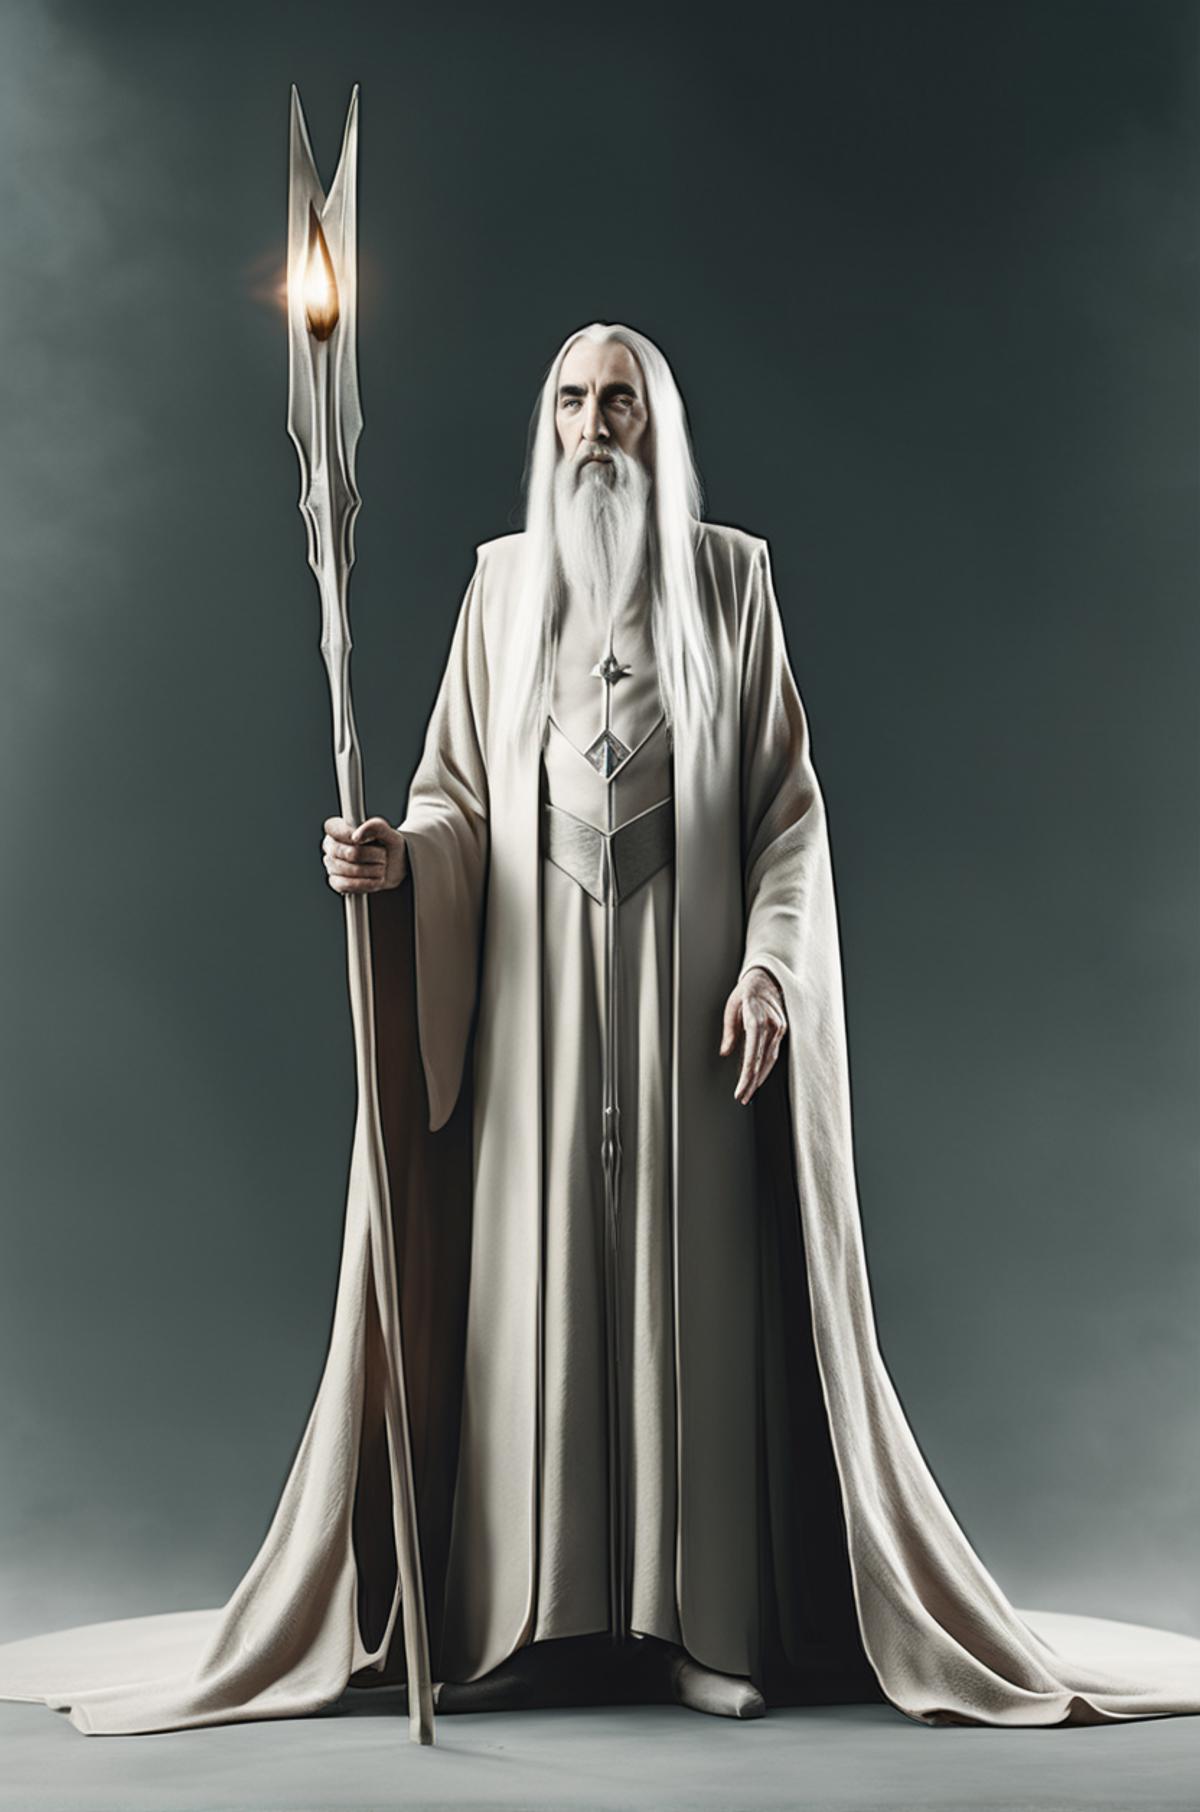 Saruman image by ainow